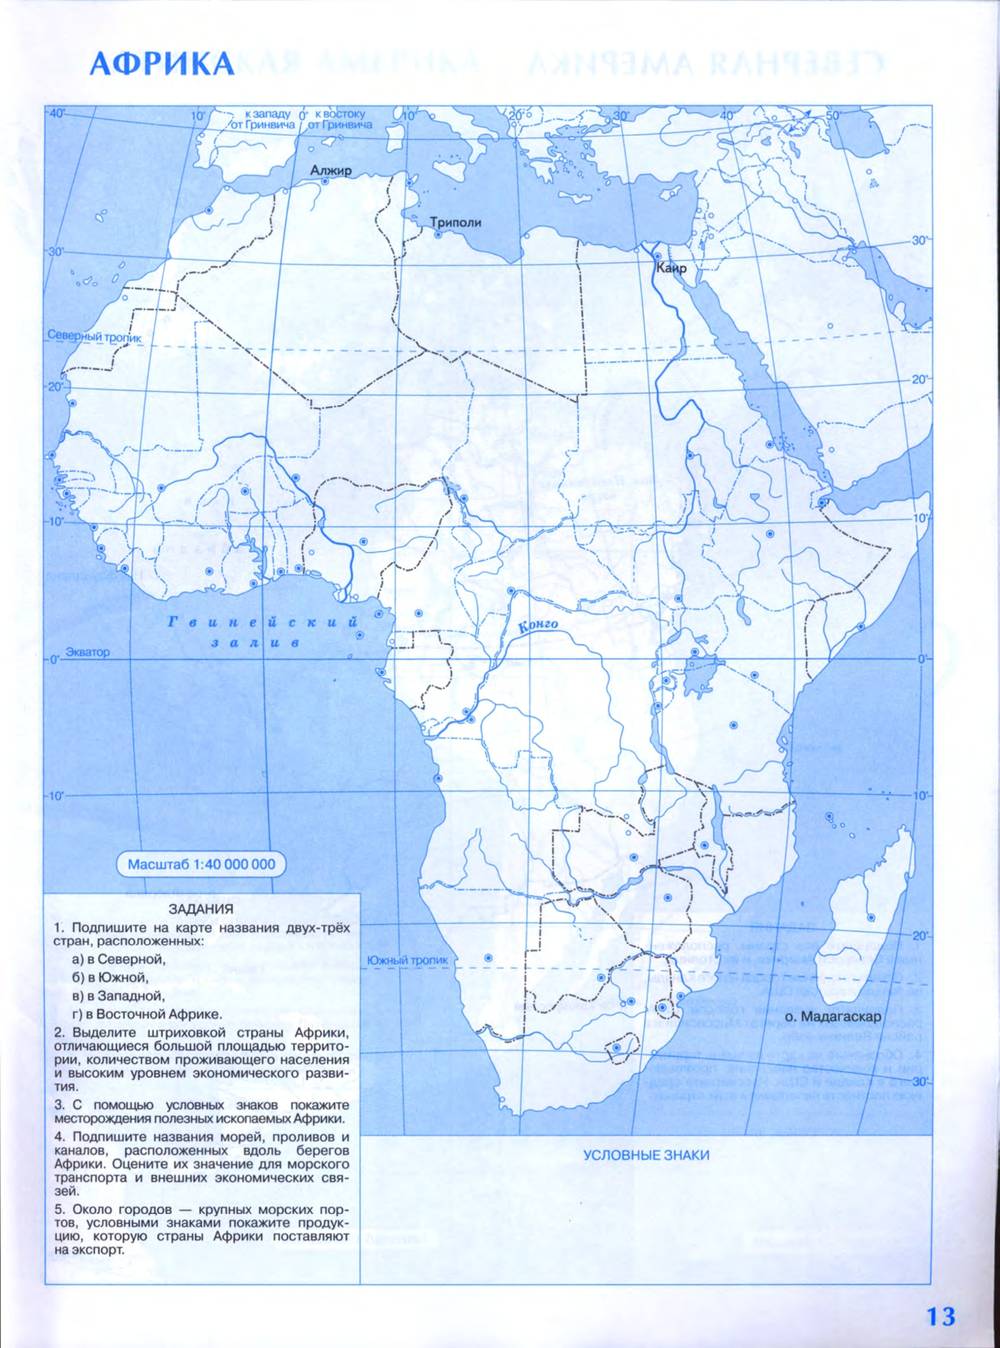 Контурная карта по географии 7 класс купить. Контурная карта Африка политическая карта 10 класс. Контурная карта Африки 10-11 класс Дрофа. Контурные карты 7 класс география Дрофа Африка. Контурная карта география 10-11 класс Африка Дрофа печатать.